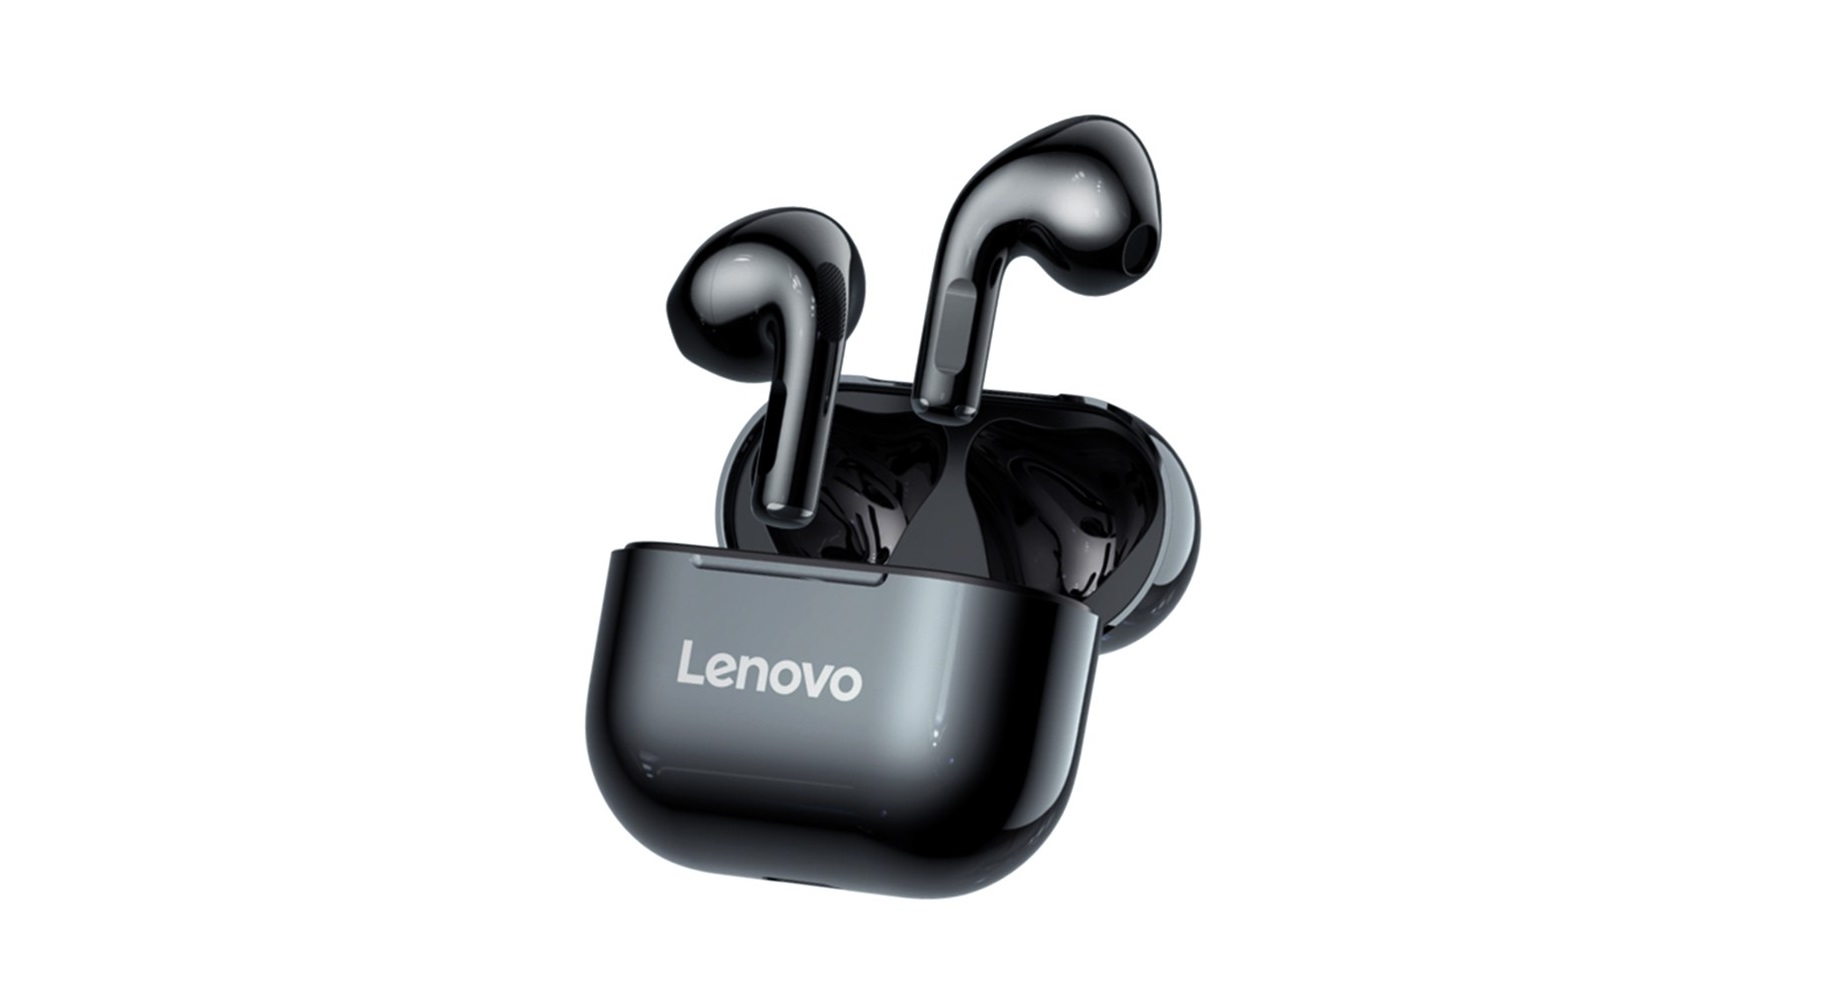 Sluchátka Lenovo LivePods LP40 s Bluetooth 5 jen za 311 Kč v akci! [sponzorovaný článek]